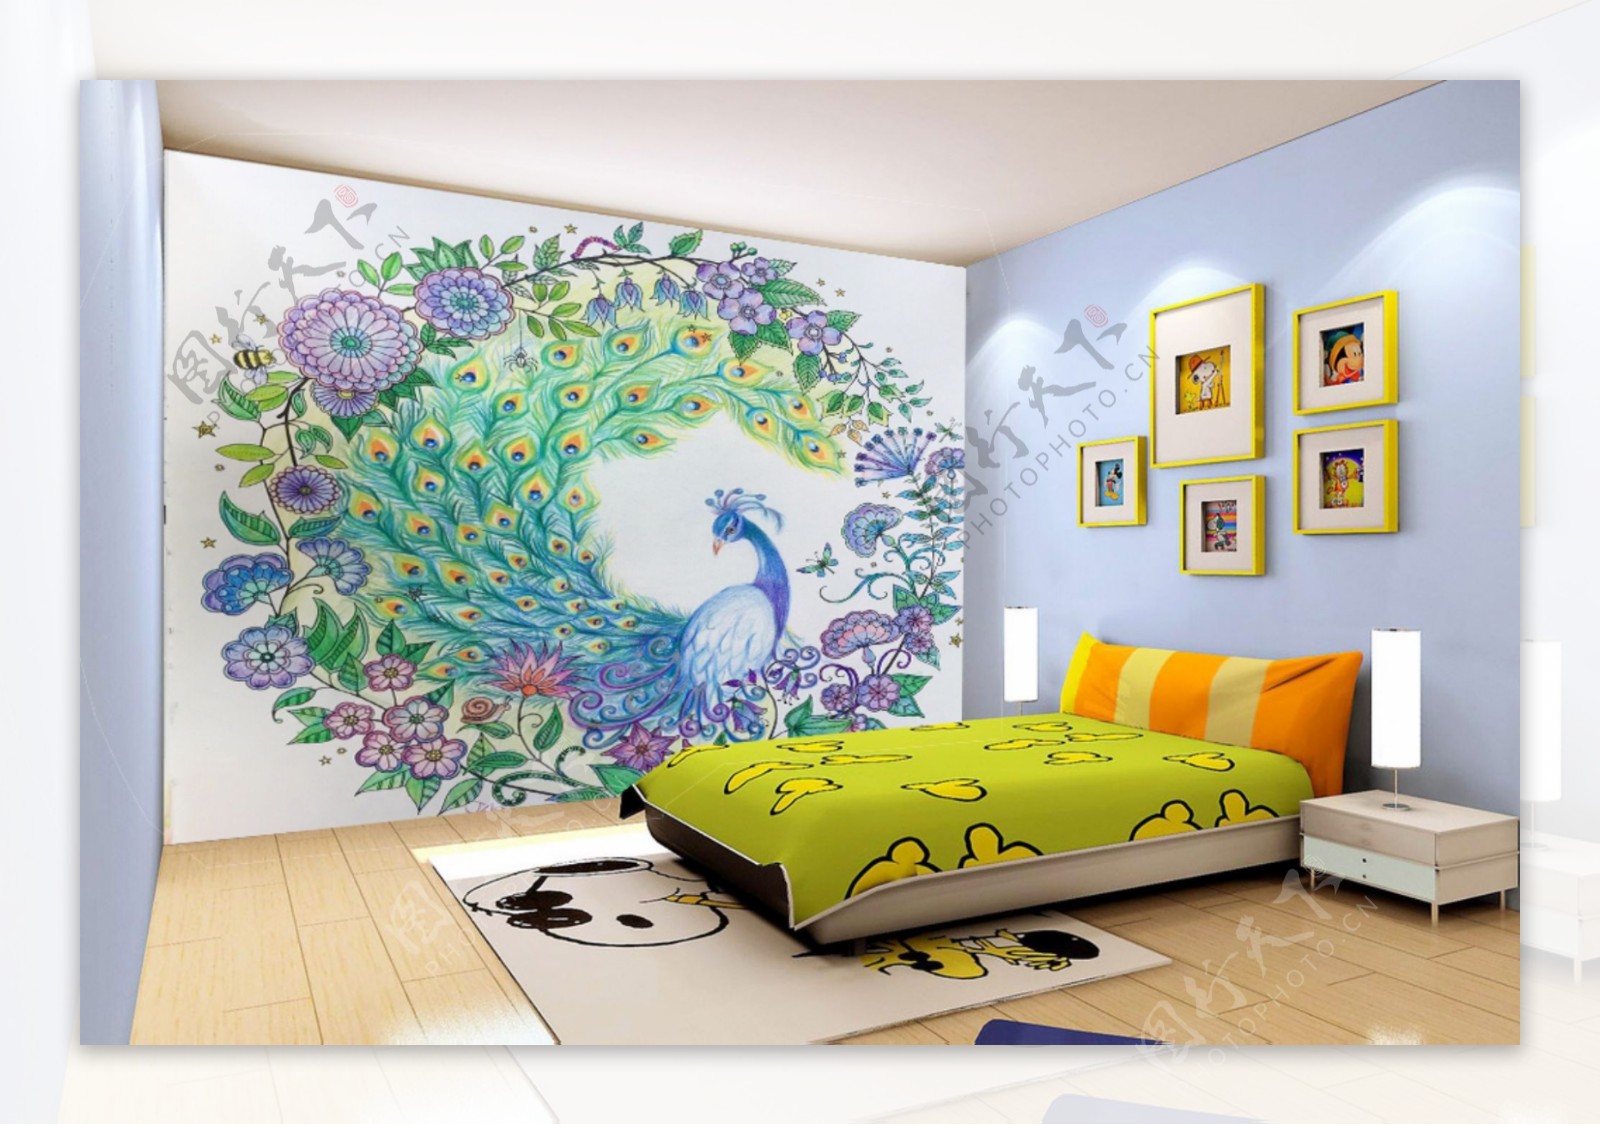 卧室背景墙手绘图案秘密花园图片